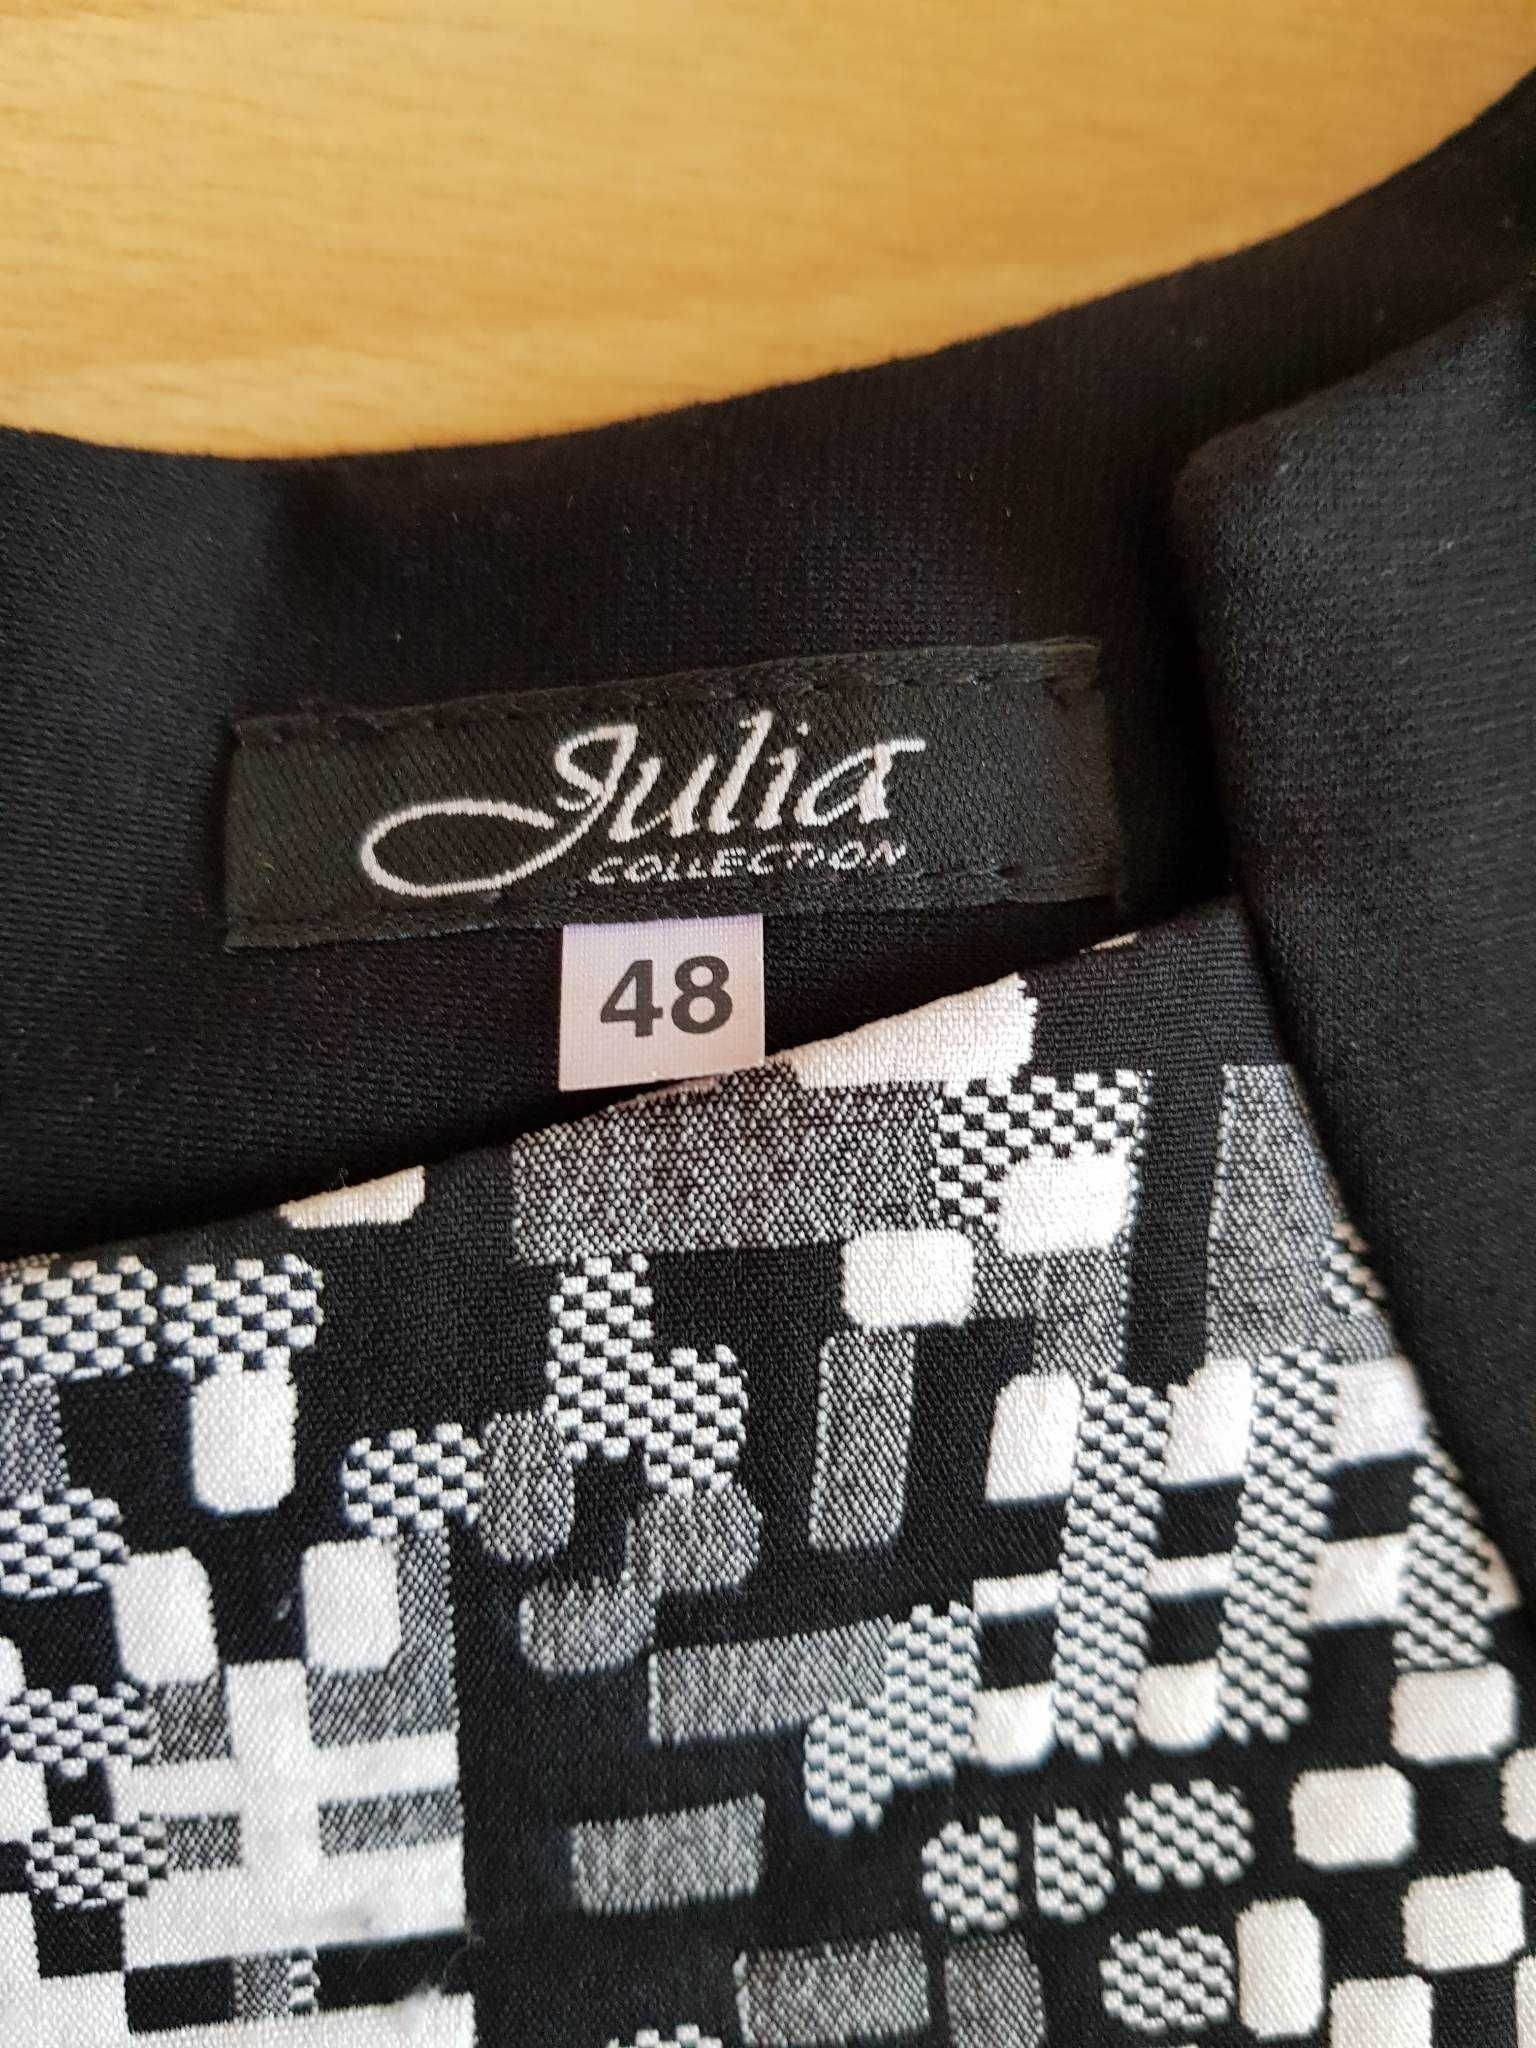 Sukienka biało- czarna firmy Julia, r . 48